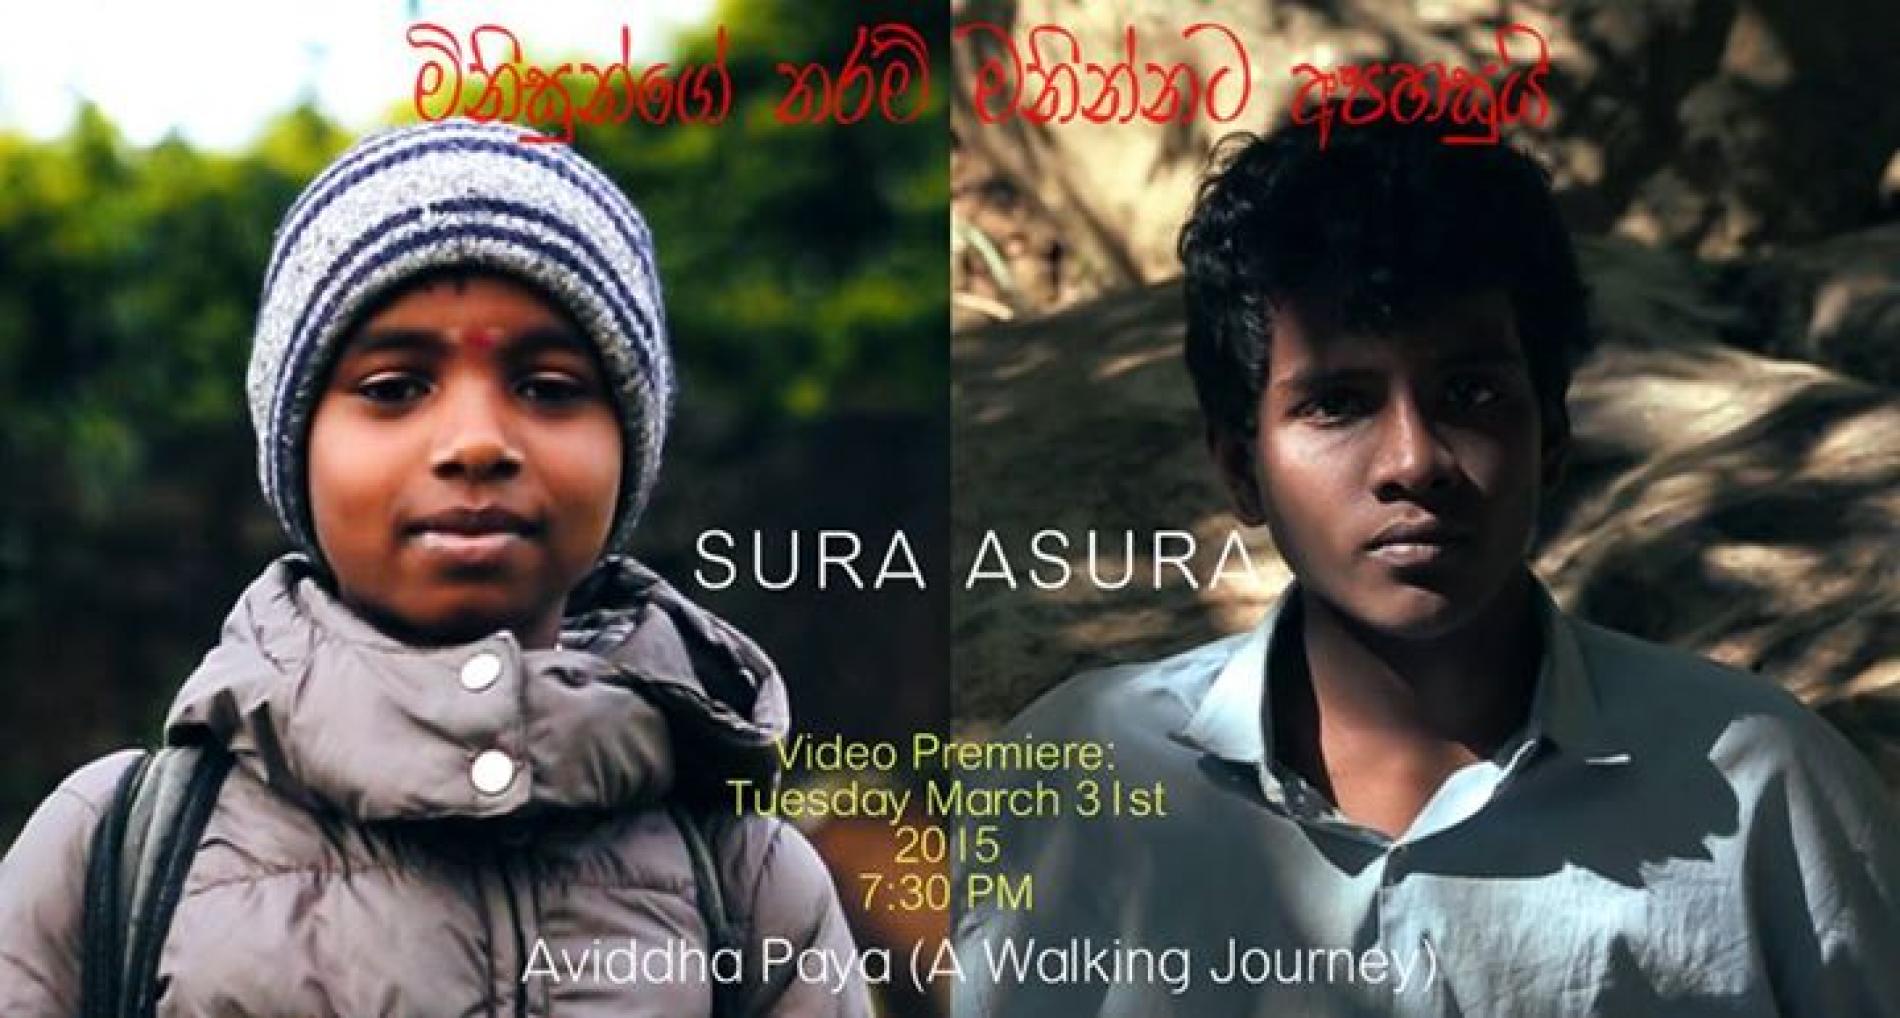 Sura Asura: Aviddha Paya (A Walking Journey)